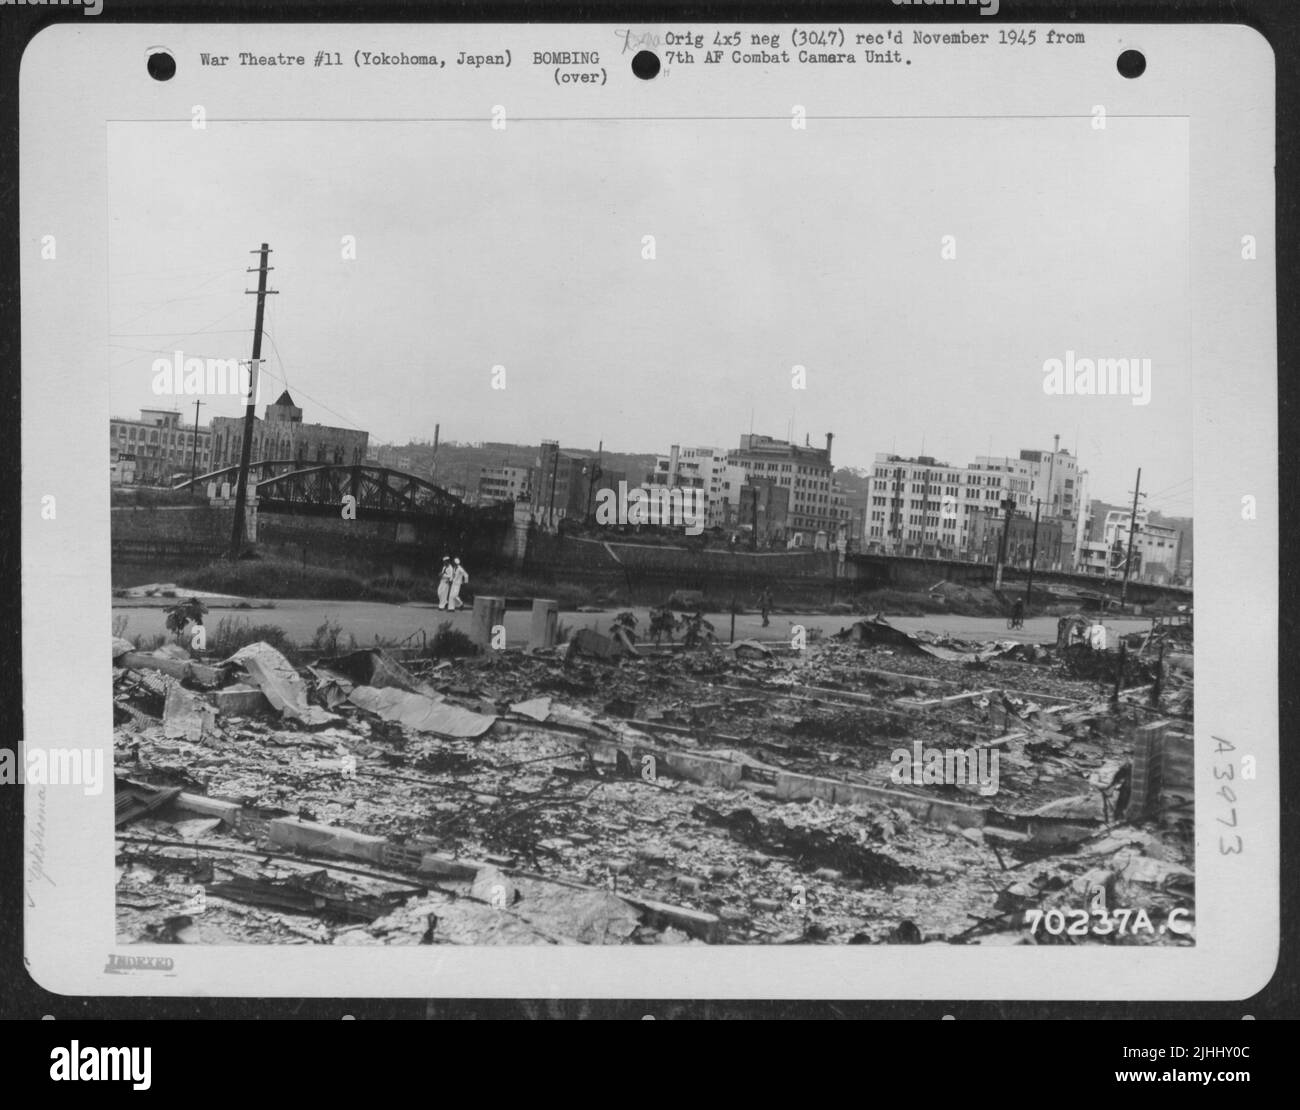 Rovine della Business Area di Yokohama, Giappone, derivanti dai bombardamenti del Might 7th Air Force Boeing B-29 'Superforstruts''. 11 settembre 1945. Foto Stock